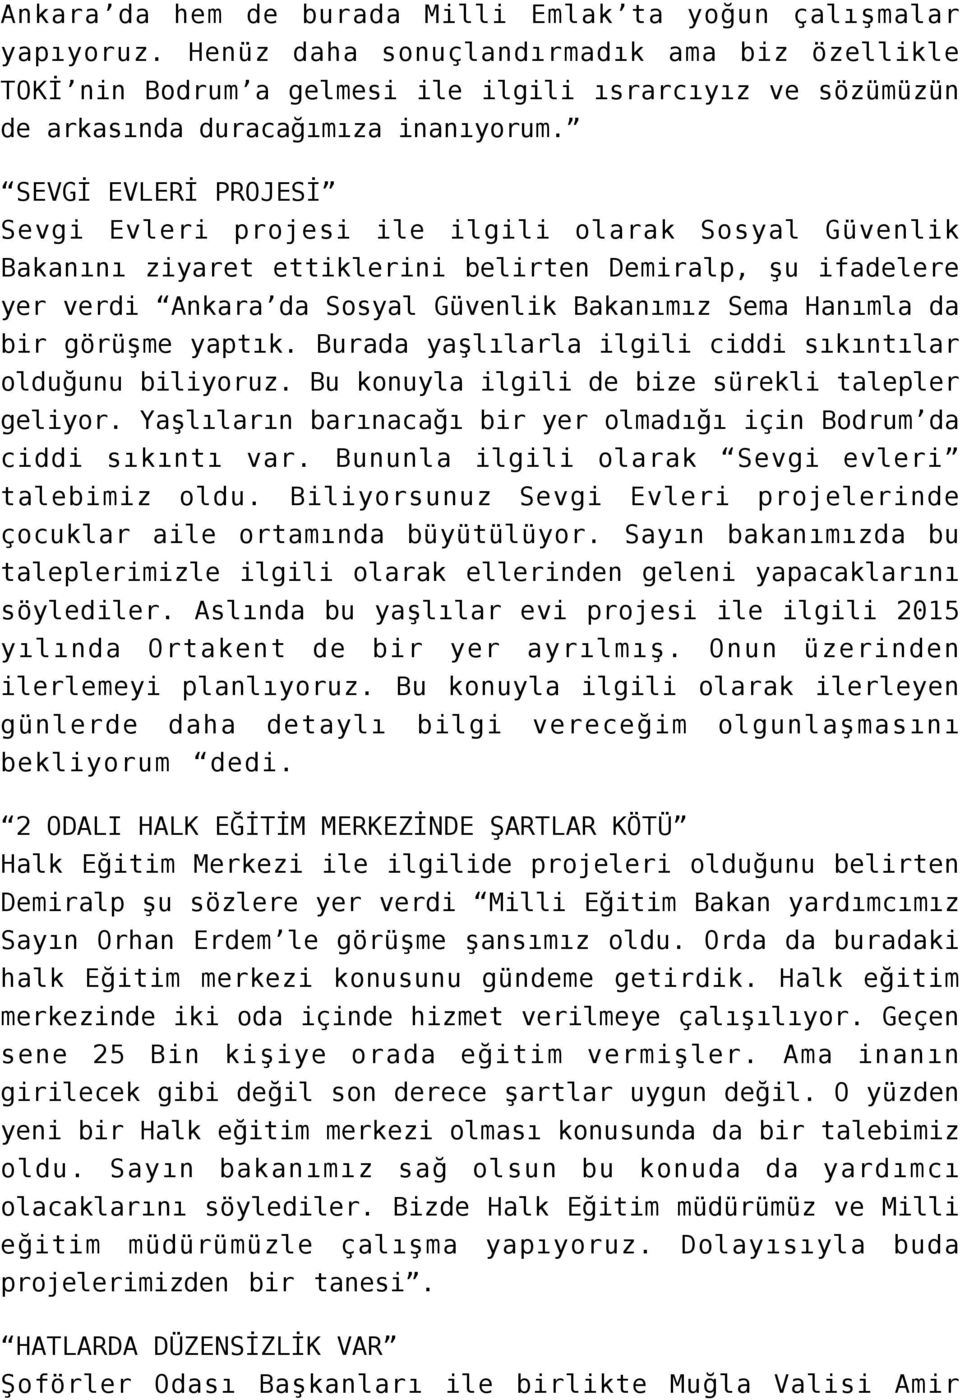 SEVGİ EVLERİ PROJESİ Sevgi Evleri projesi ile ilgili olarak Sosyal Güvenlik Bakanını ziyaret ettiklerini belirten Demiralp, şu ifadelere yer verdi Ankara da Sosyal Güvenlik Bakanımız Sema Hanımla da